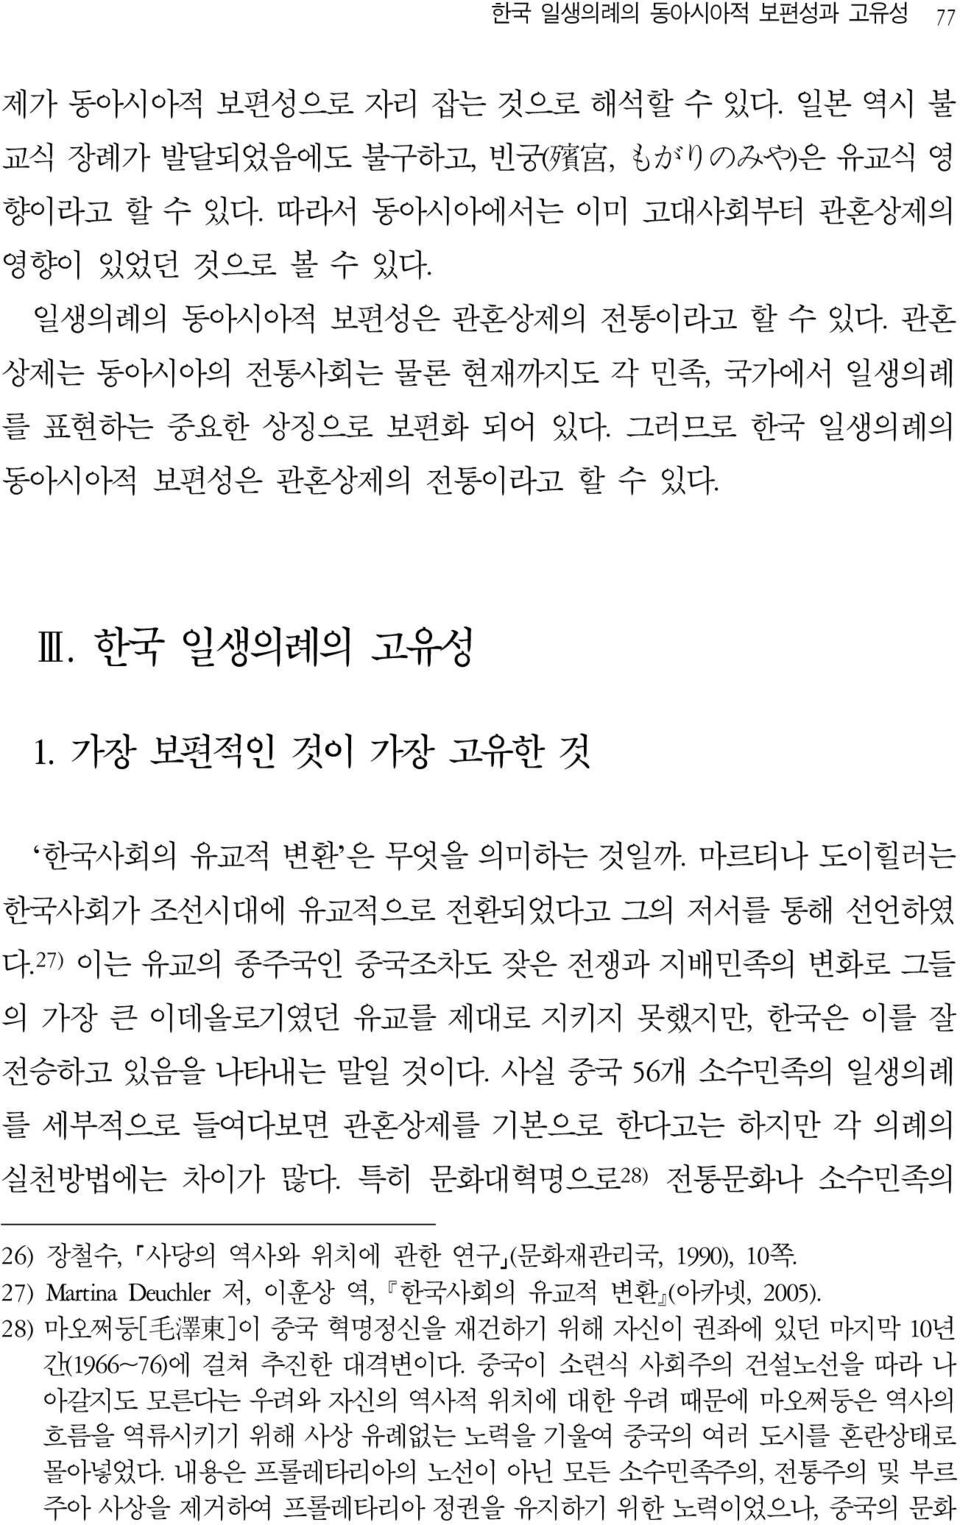 가장 보편적인 것이 가장 고유한 것 한국사회의 유교적 변환 은 무엇을 의미하는 것일까. 마르티나 도이힐러는 한국사회가 조선시대에 유교적으로 전환되었다고 그의 저서를 통해 선언하였 다.